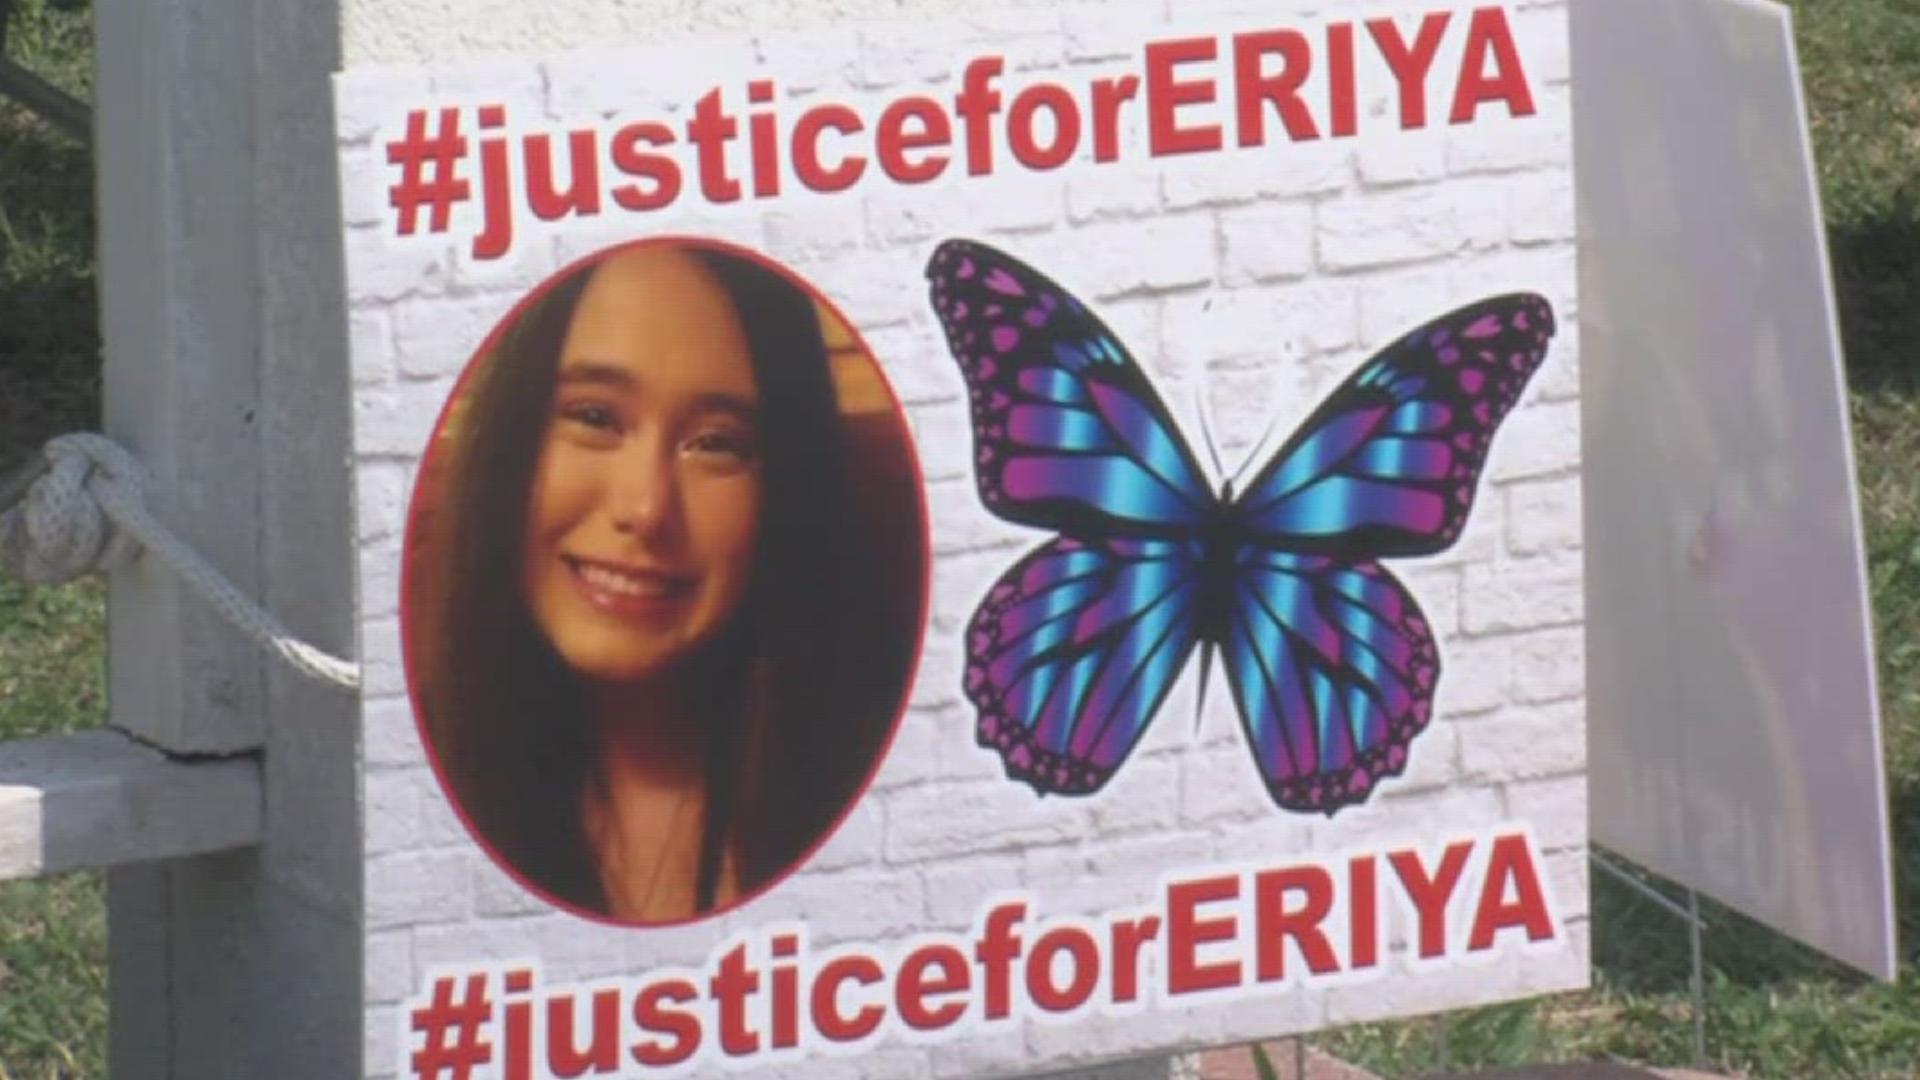 Sunday marks one year since 15-year-old Eriya Ruiz was stabbed by her boyfriend a year ago on Pennine Way.